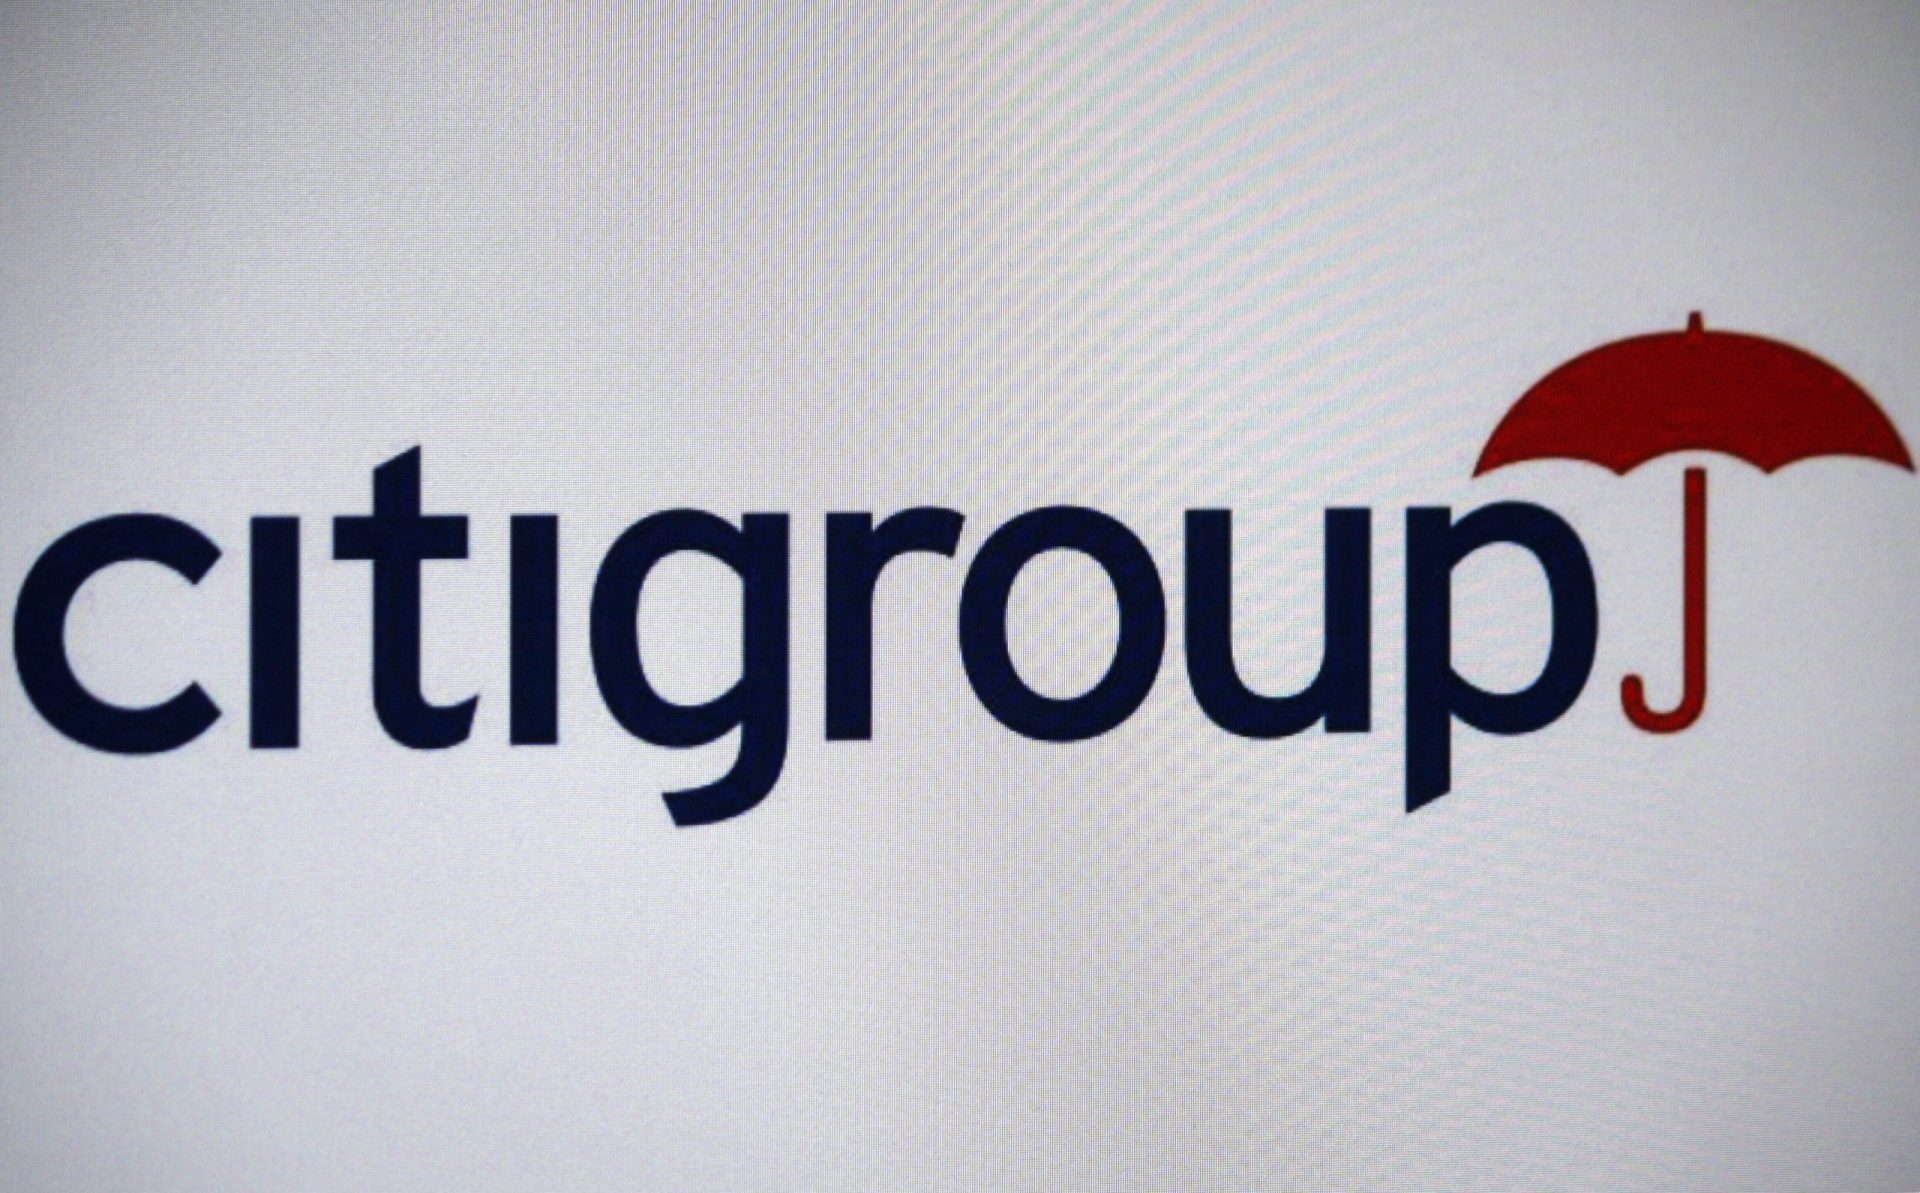 Executivo do Citigroup encontrado morto em casa com golpe na garganta